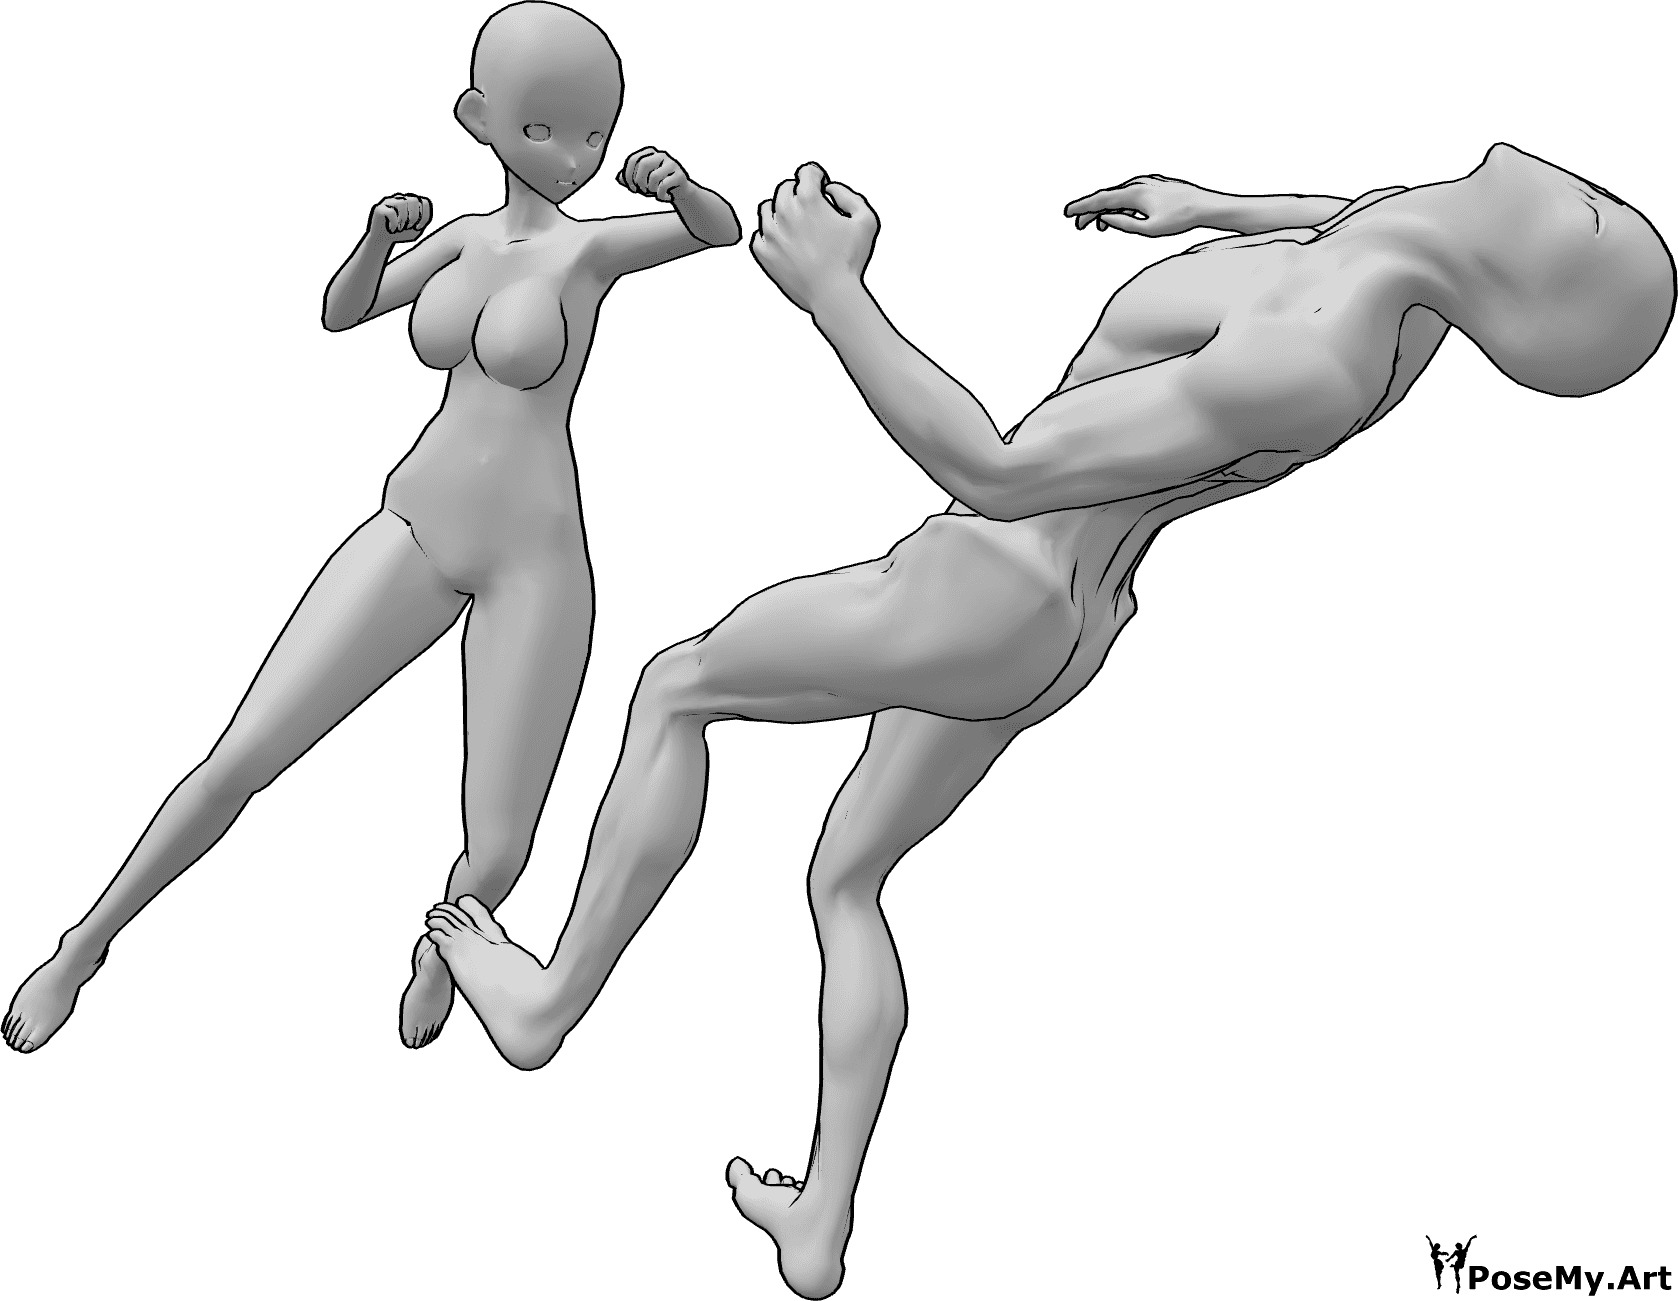 Référence des poses- Pose d'une femme de l'anime en train de donner un coup de poing - L'ennemi tombe inconsciemment en arrière à la suite d'un coup de poing à la tête.